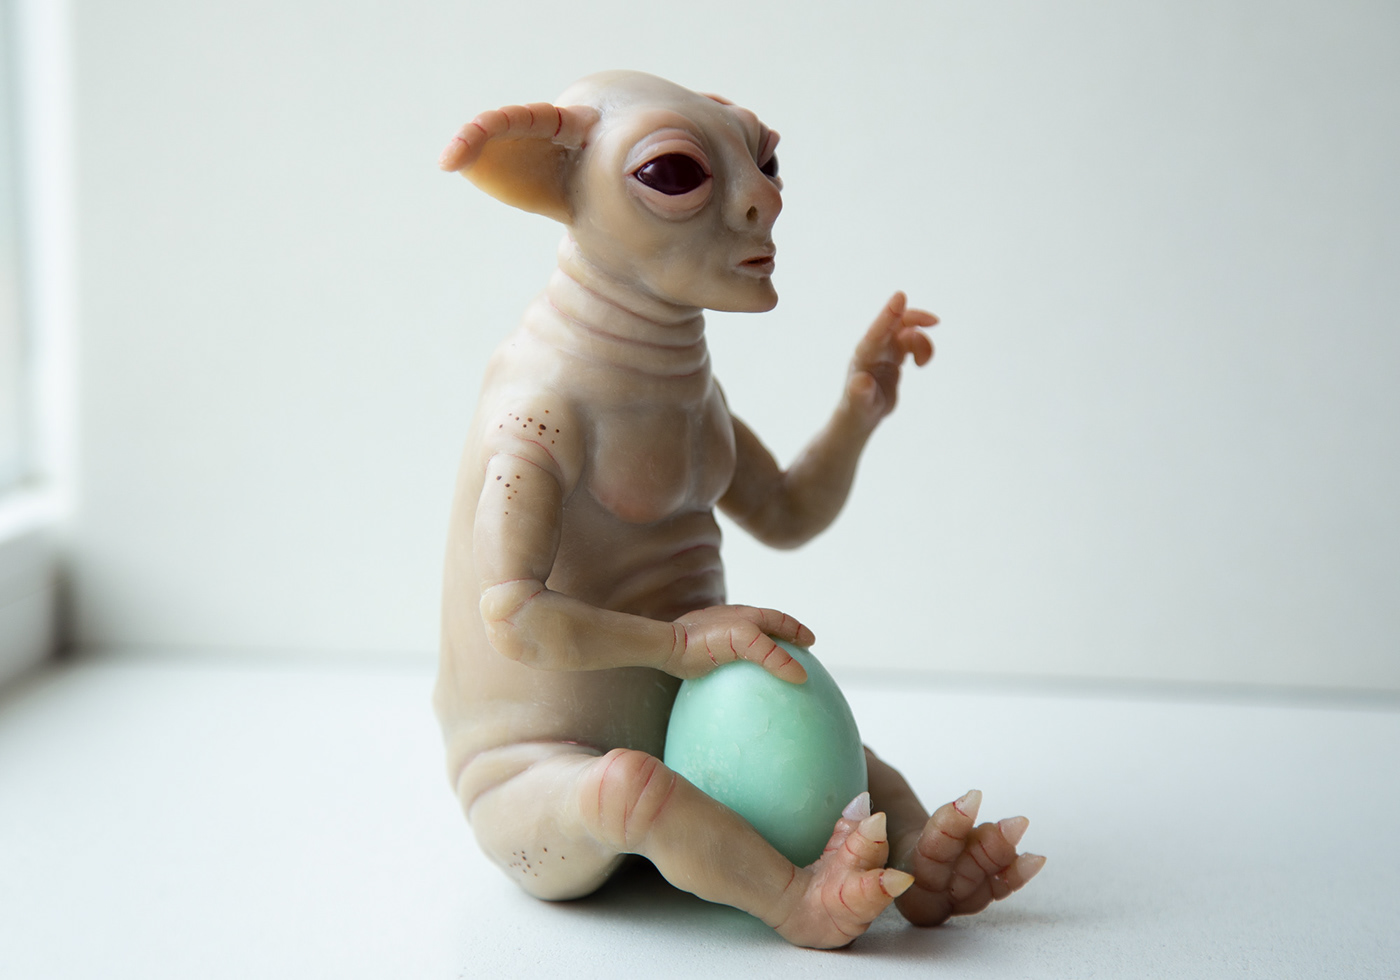 statue sculpture alien Character design  artwork art doll handmade craft ooak toy